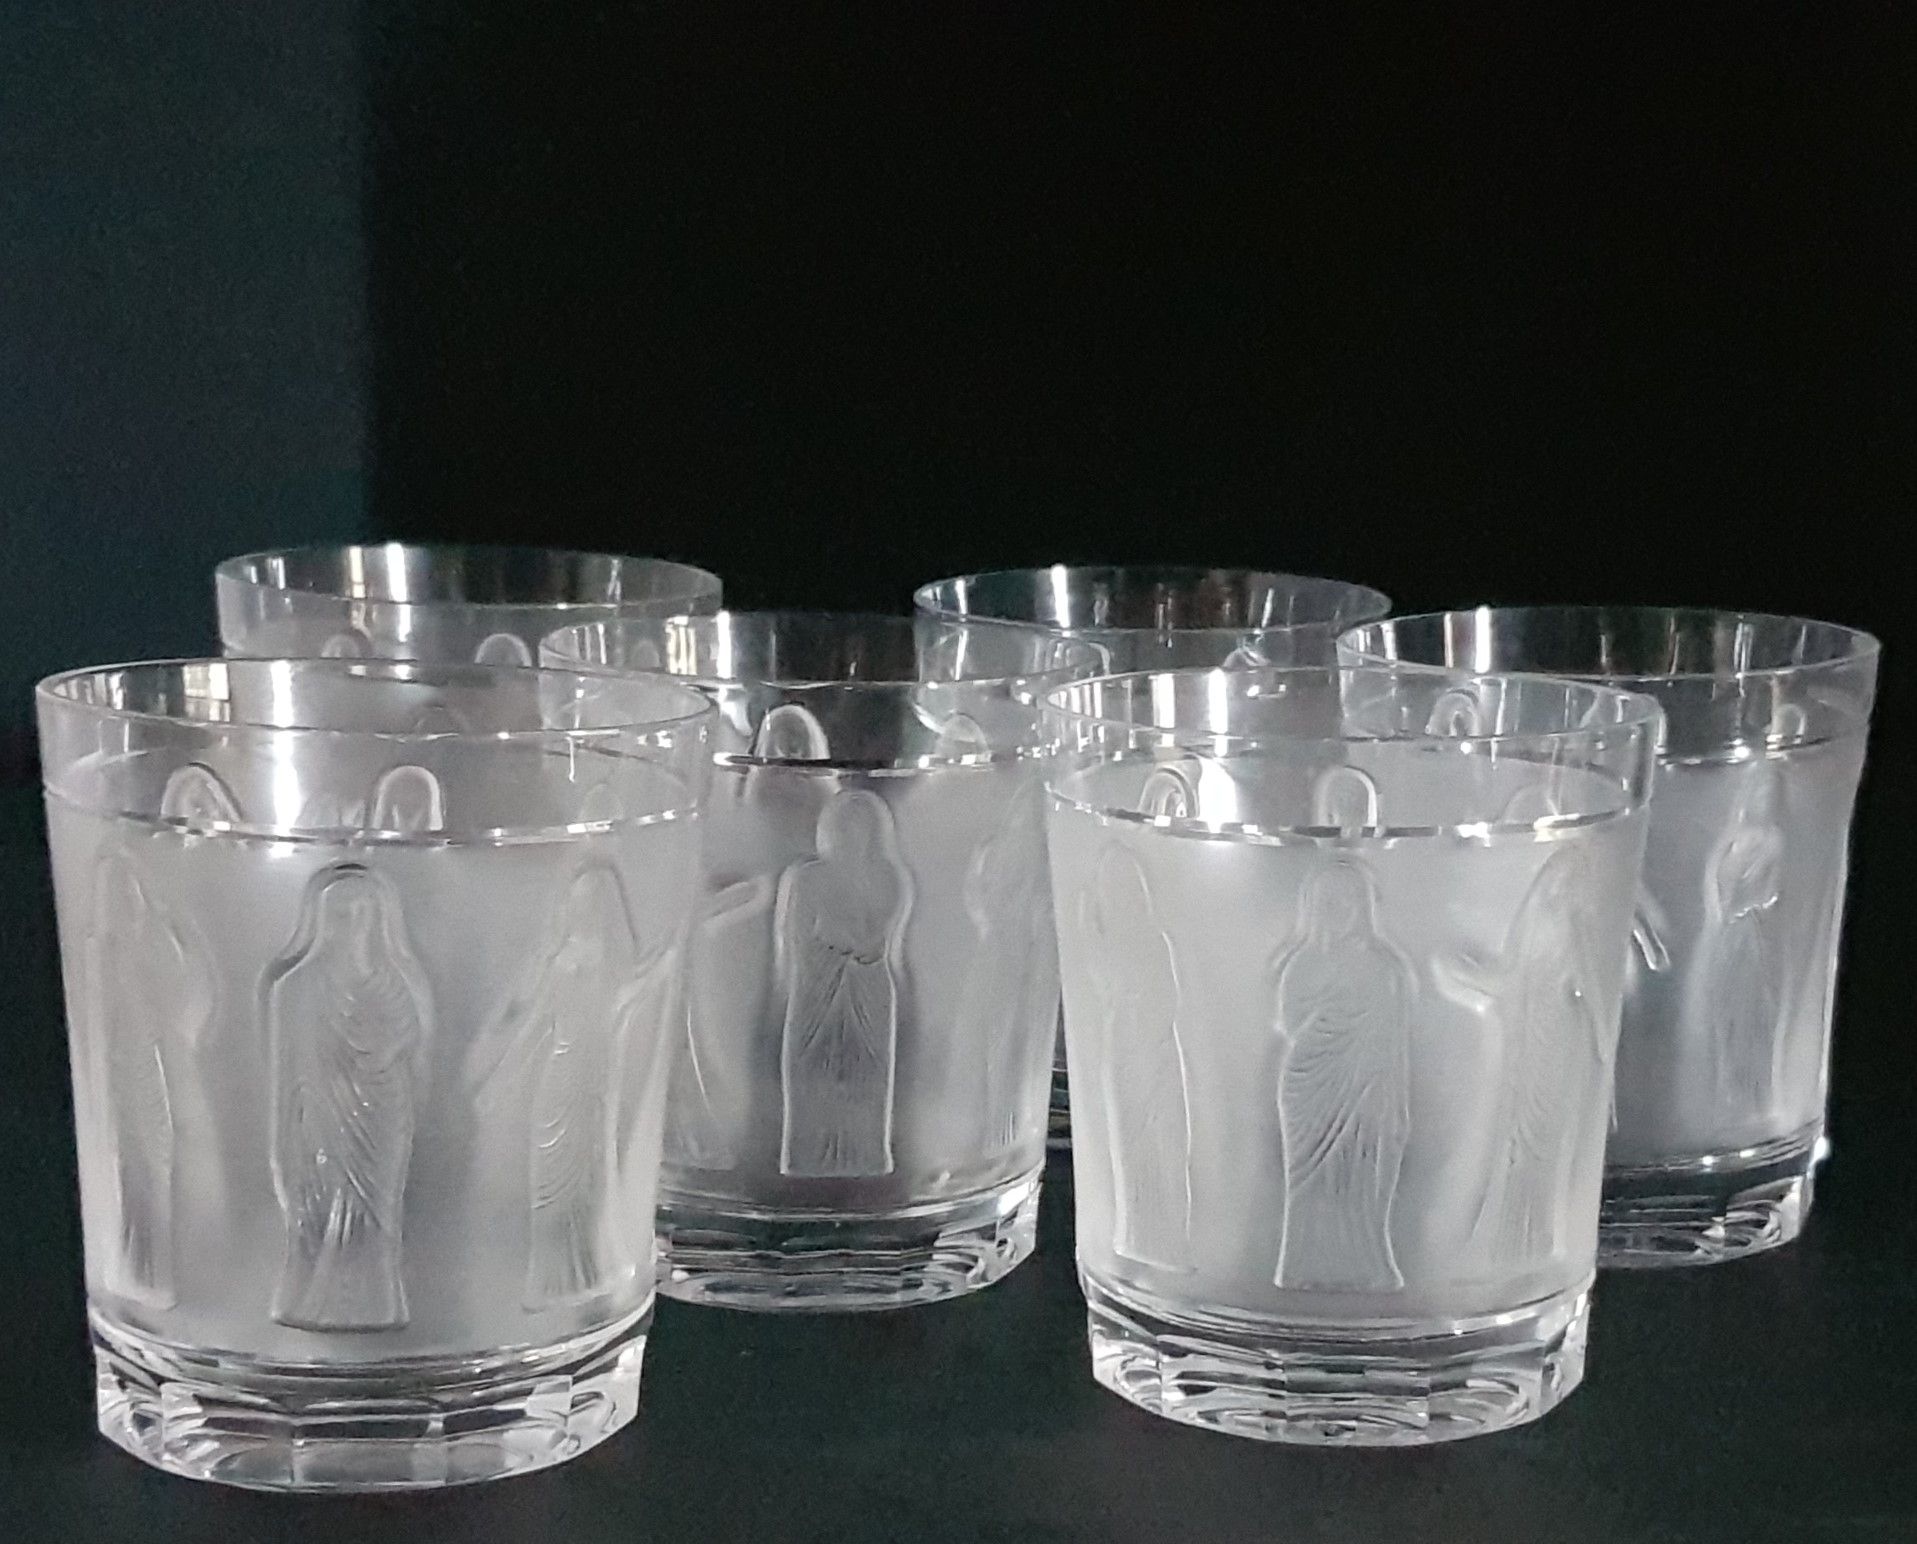 Marc LALIQUE (1900-1977) 
"Mujeres antiguas". Seis copas de cristal prensado con&hellip;